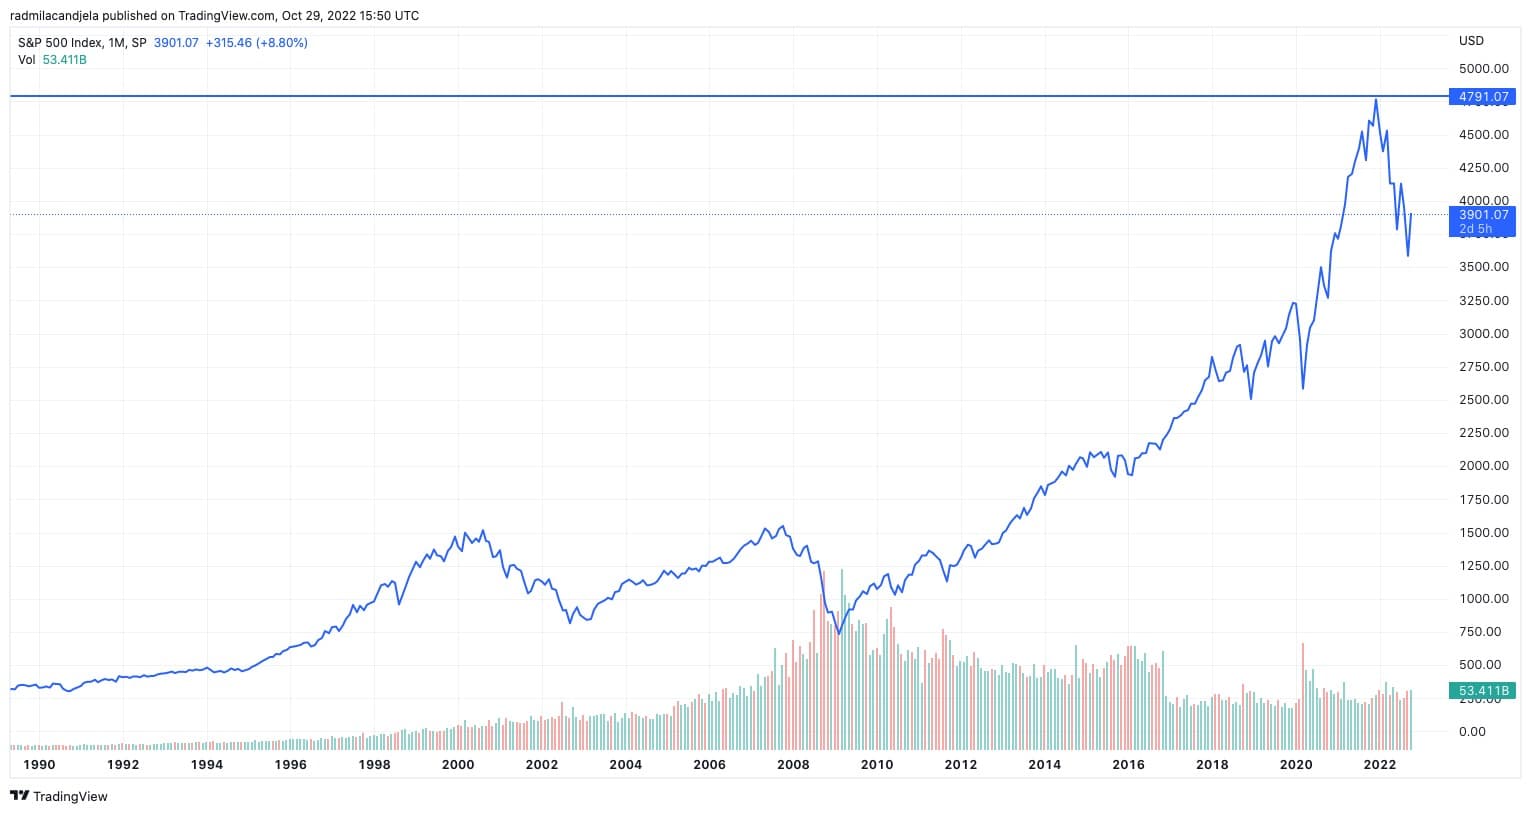 Gráfico del índice S&P 500 de 1990 a 2022 (Fuente: TradingView)